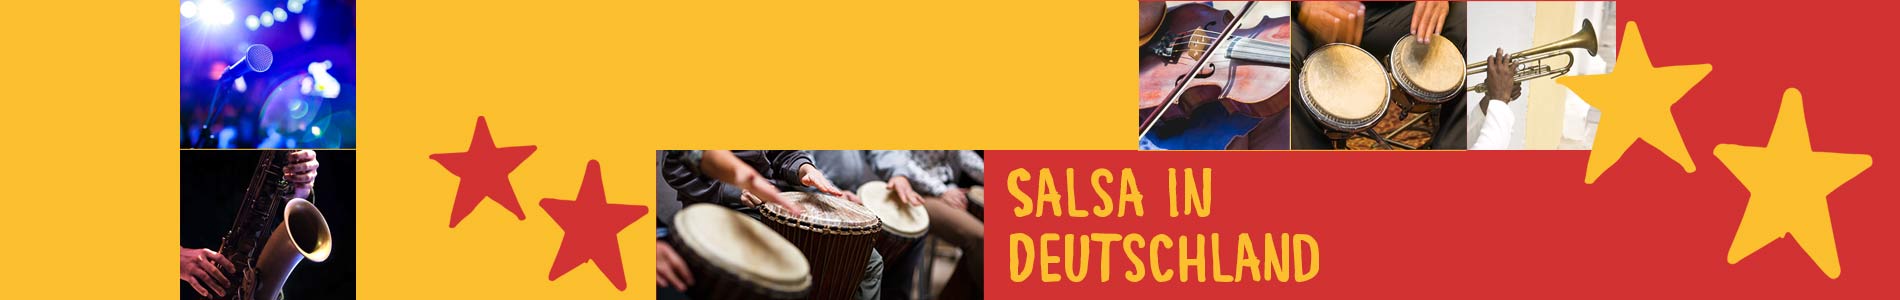 Salsa in Borstel-Hohenraden – Salsa lernen und tanzen, Tanzkurse, Partys, Veranstaltungen